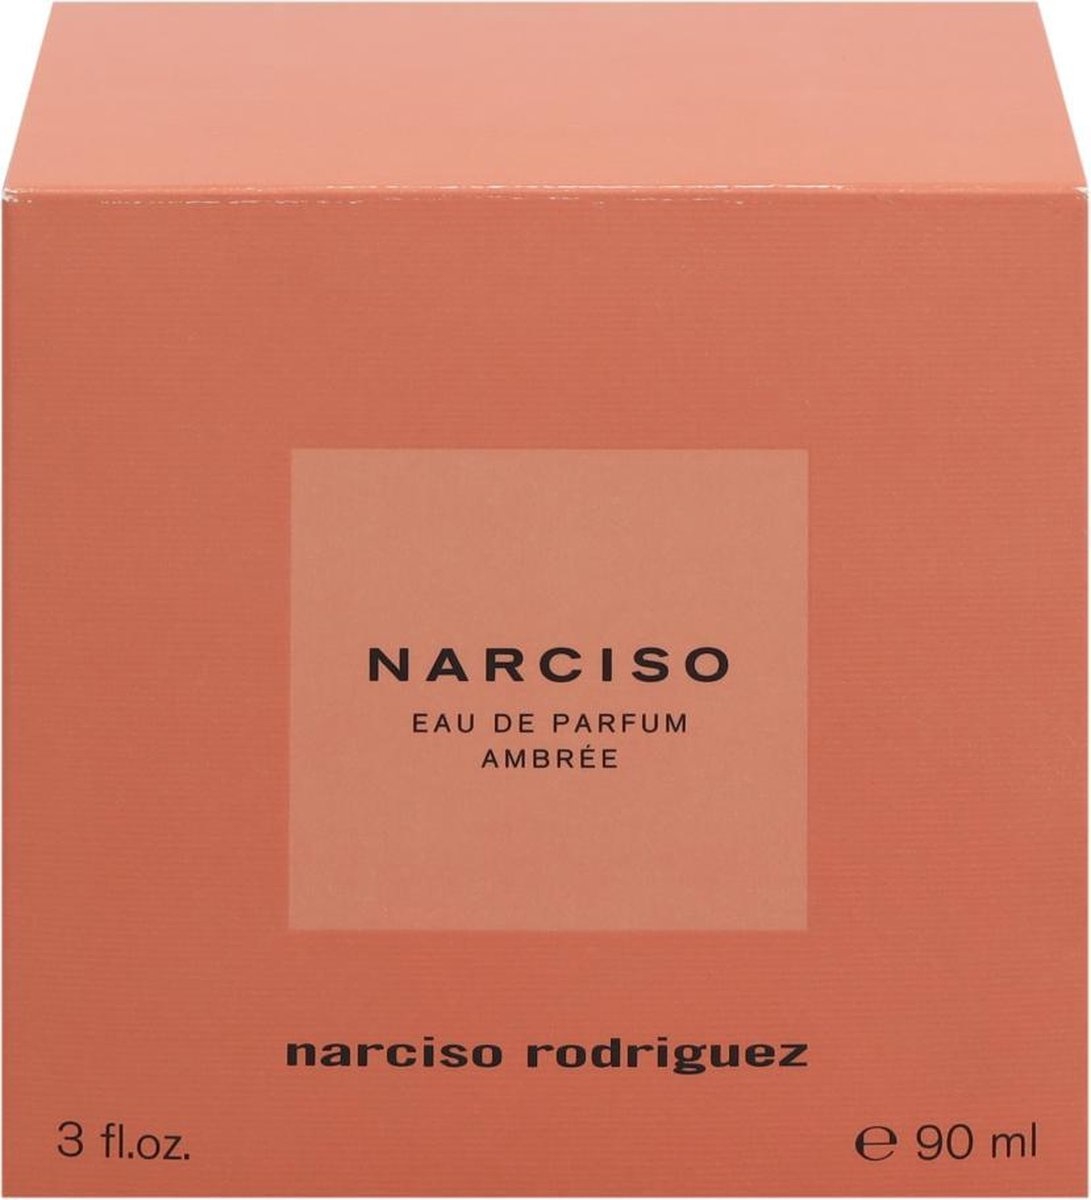 Narciso Rodriguez Narciso Ambree - 90 ml - Eau de Parfum für Damen - Verpackung beschädigt